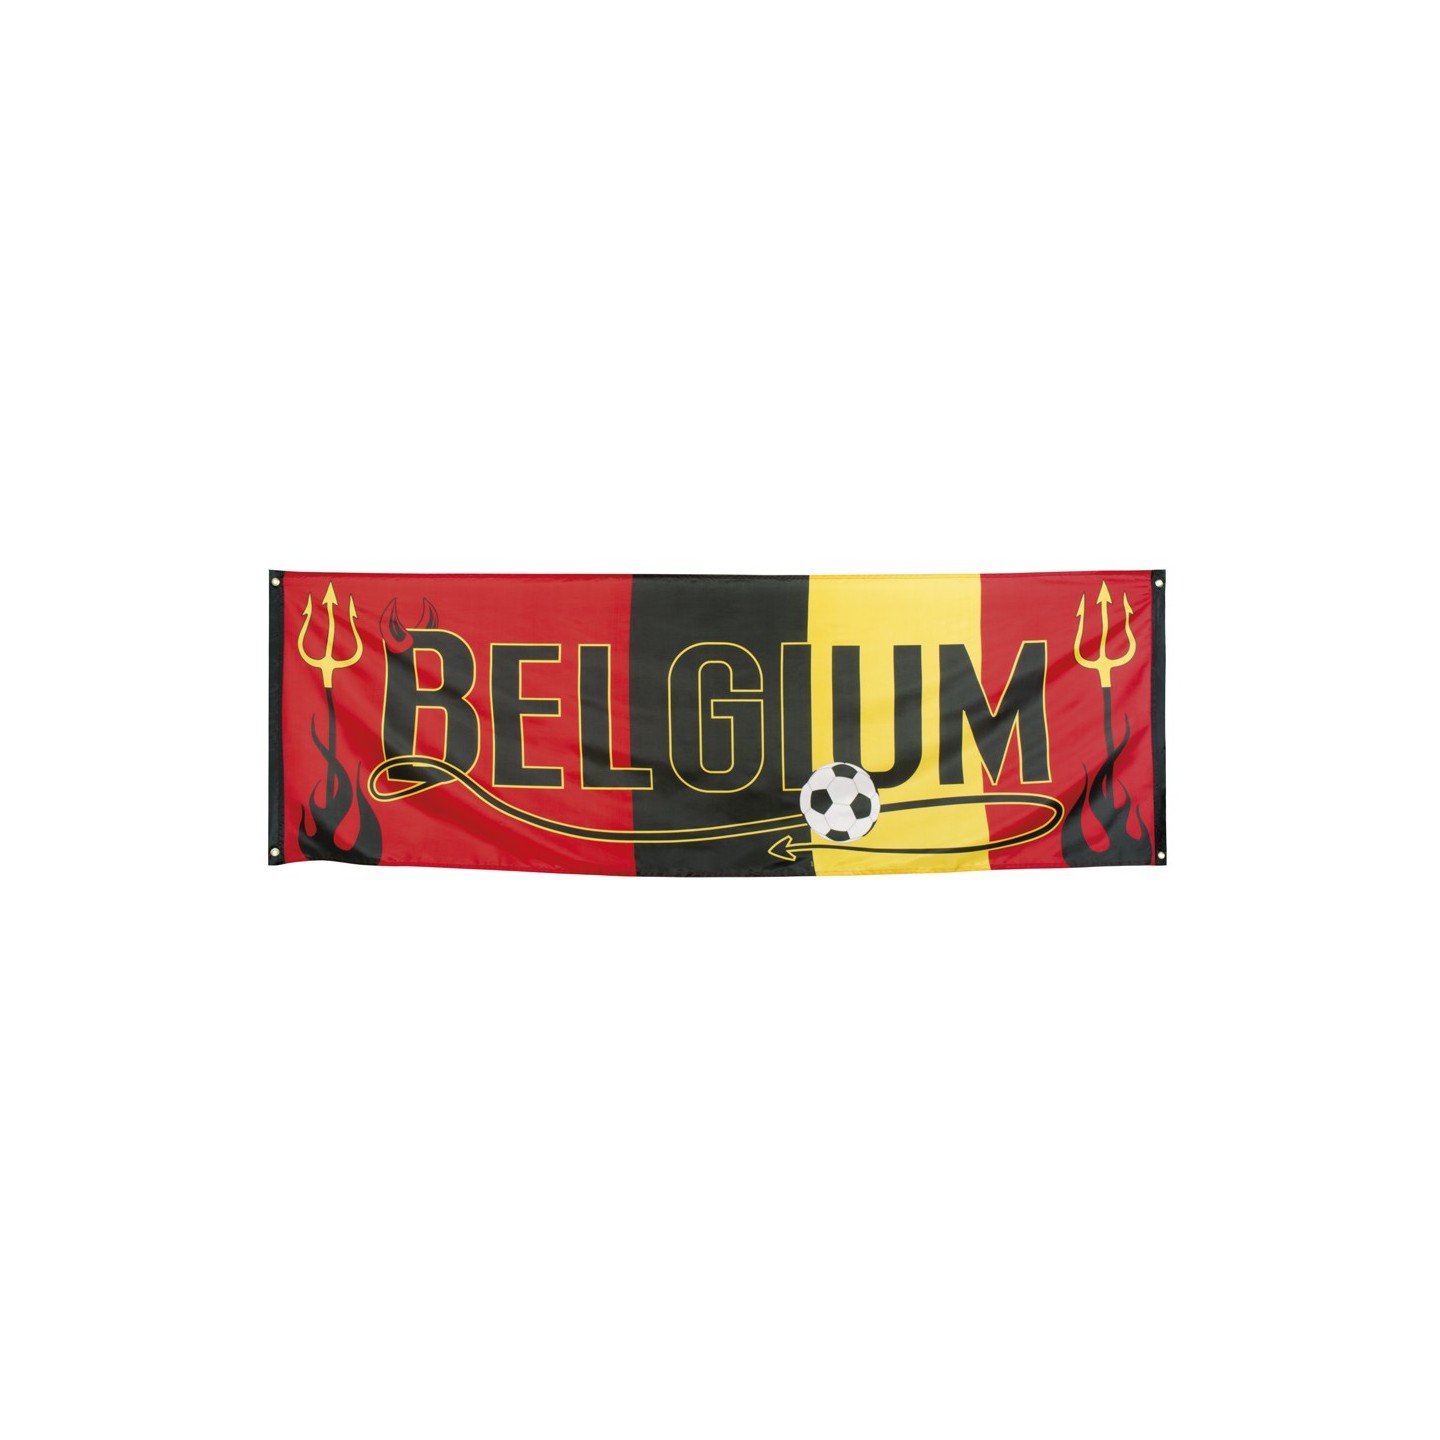 Banner Spandoek Belgium 74x220cm